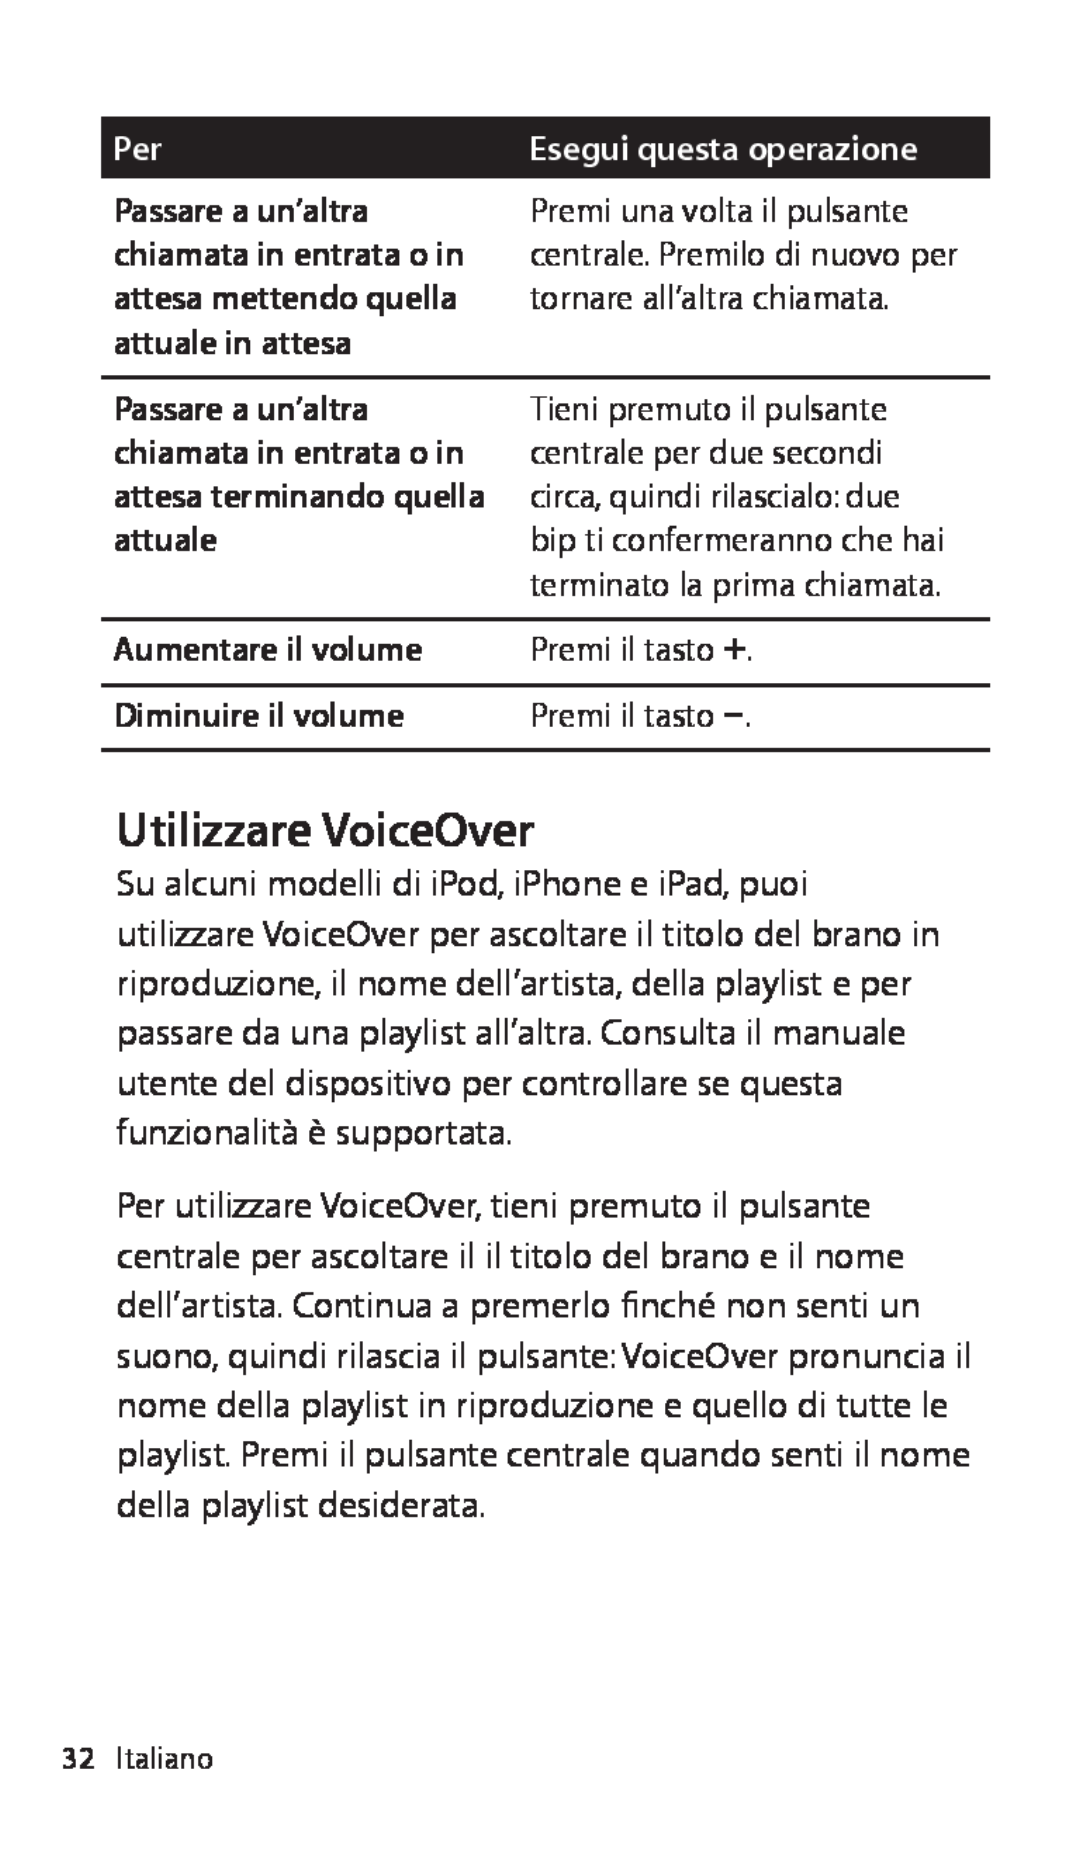 Apple ZM034-5431-A Utilizzare VoiceOver, Esegui questa operazione, Aumentare il volume, Premi il tasto ∂, Premi il tasto D 